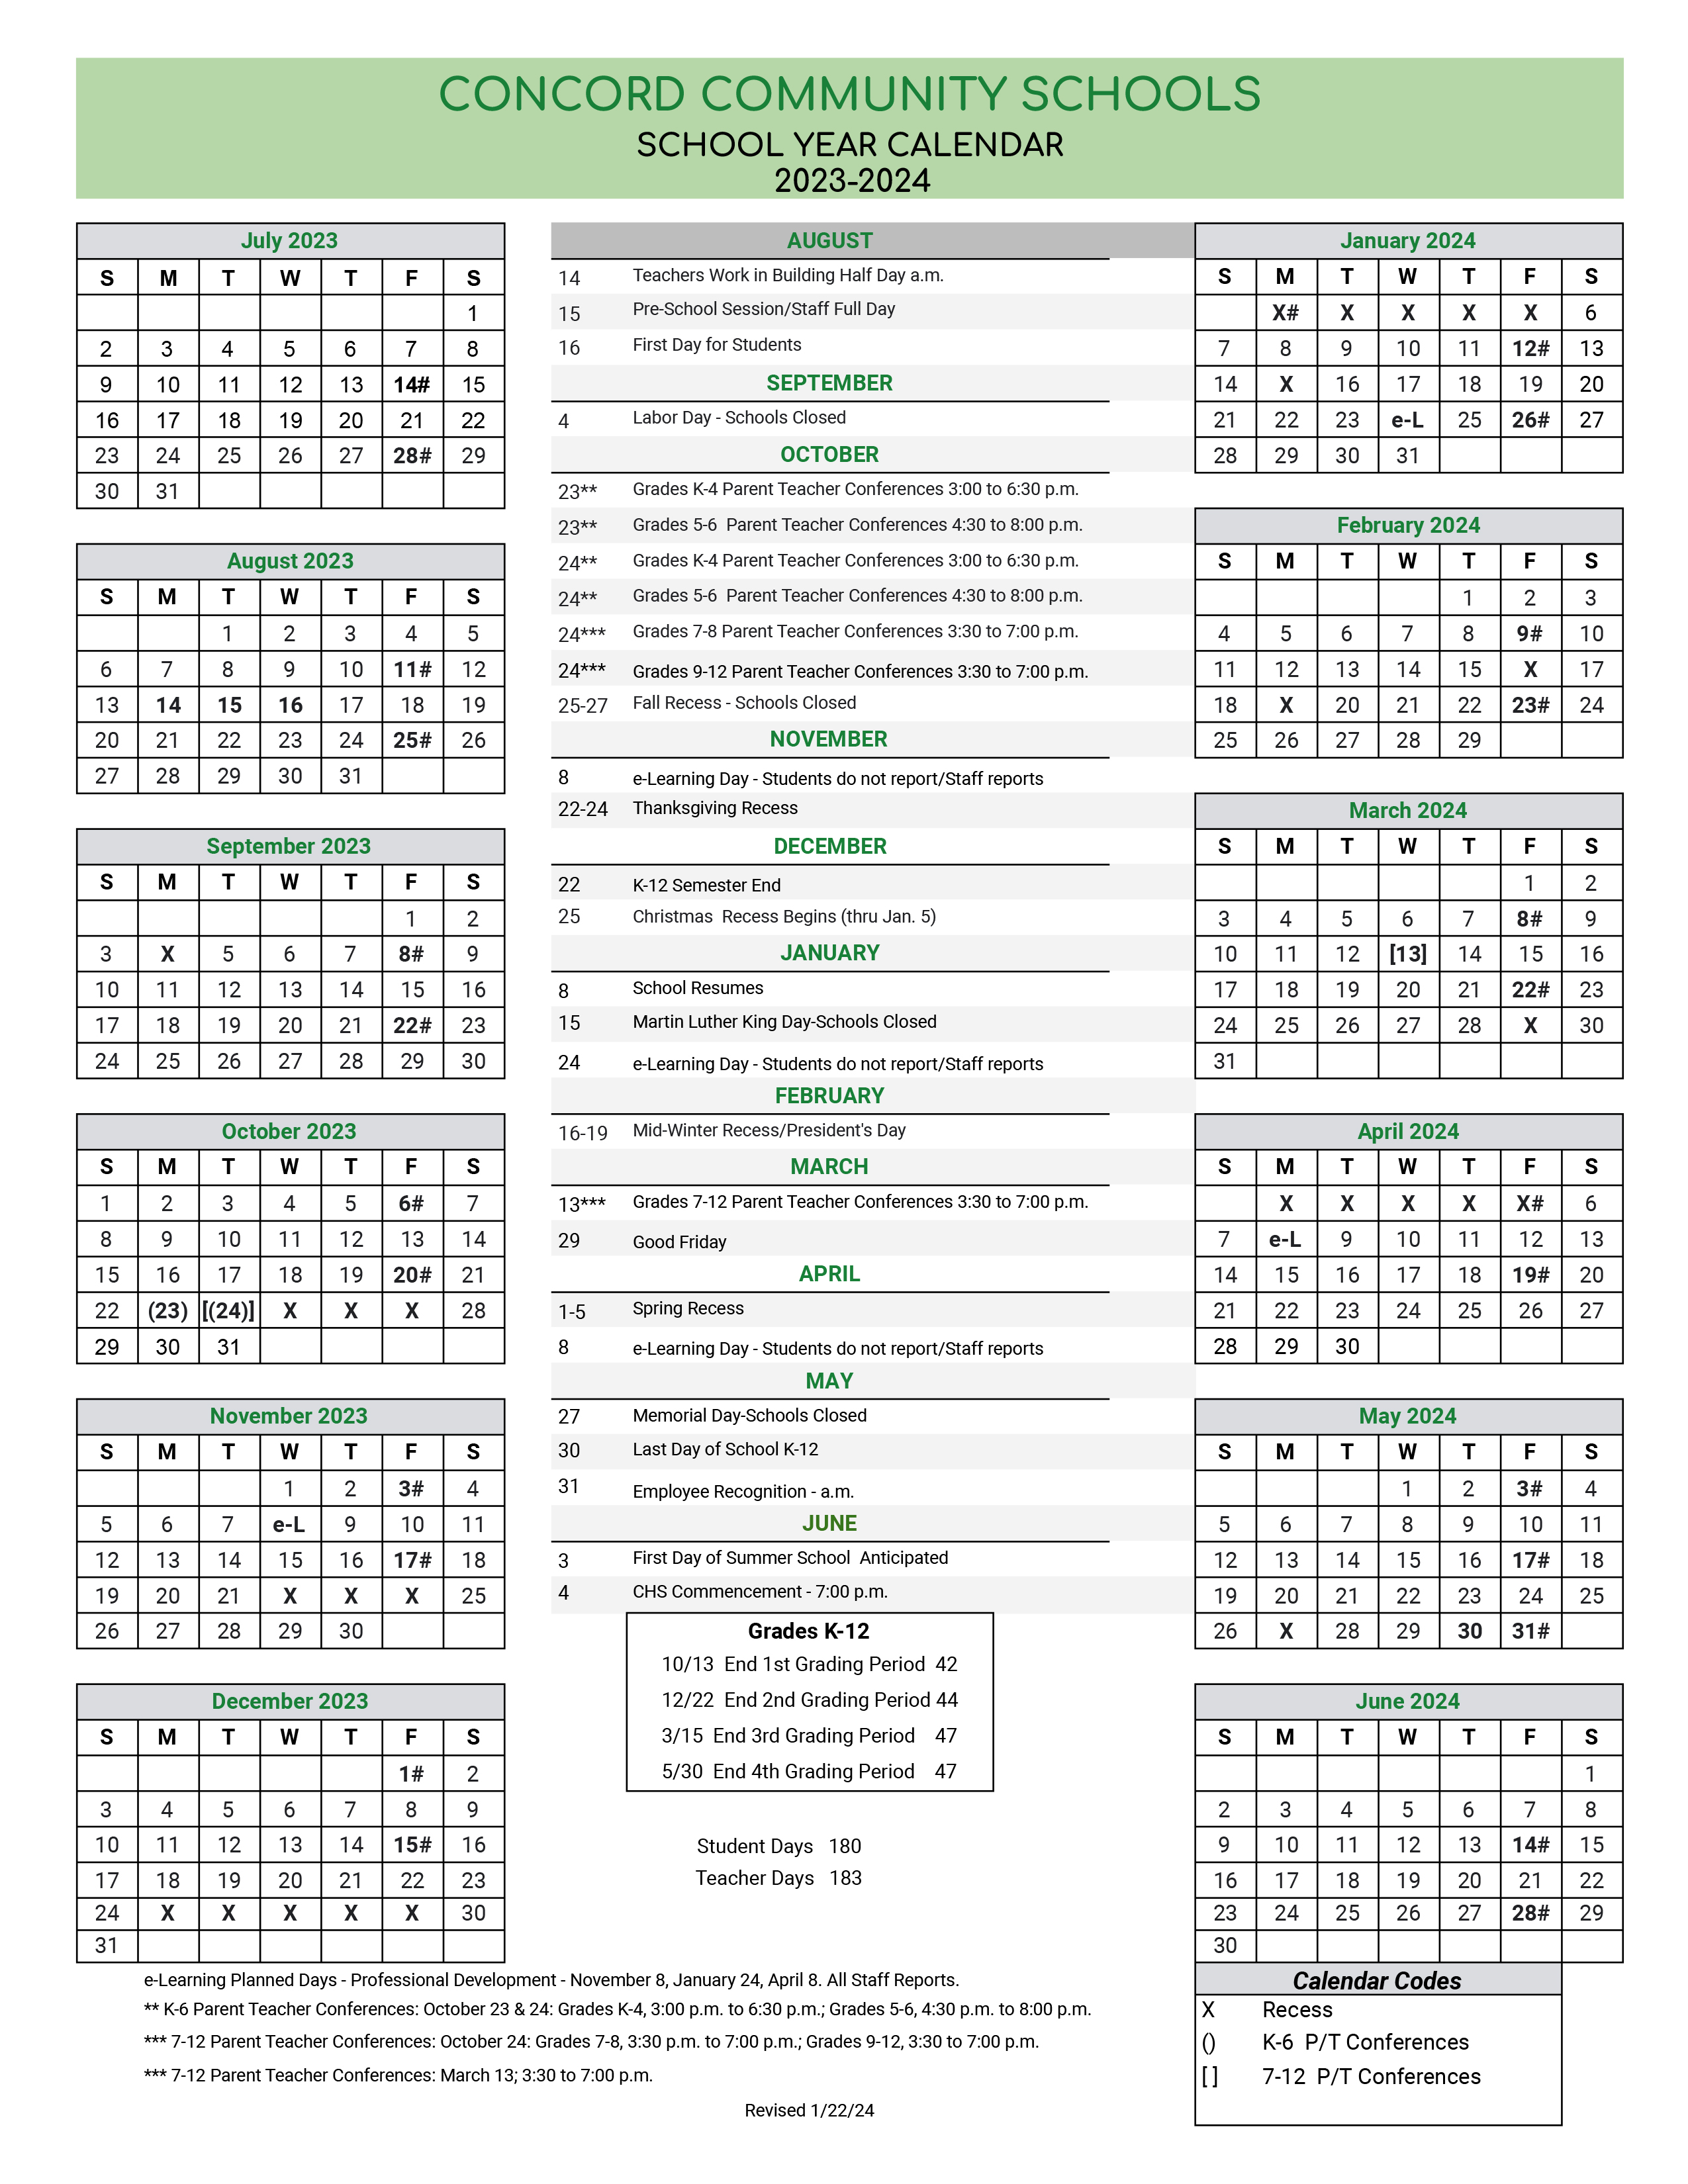 2023-24 school year calendar